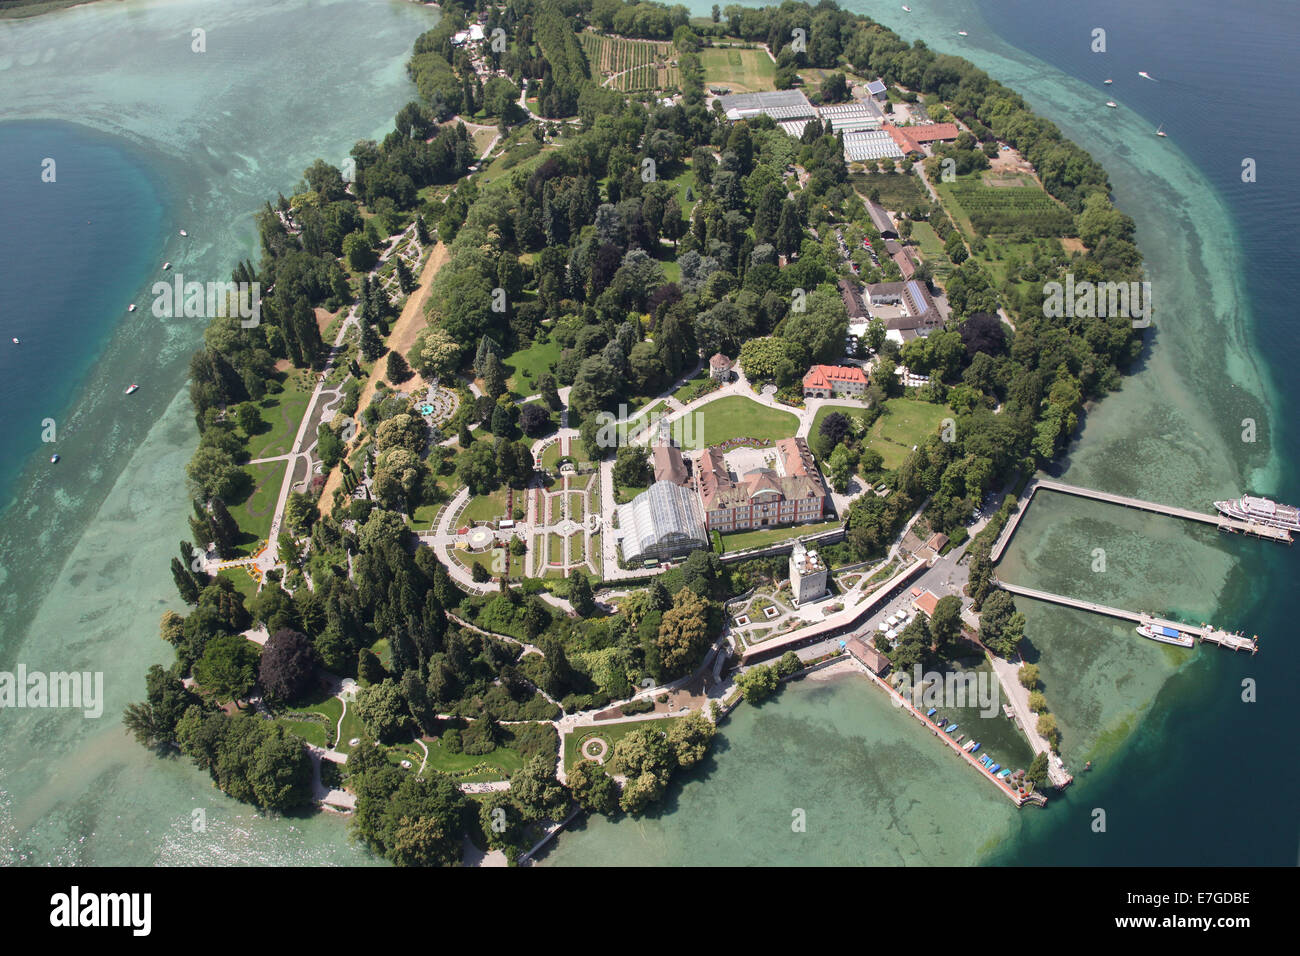 27.06.2014, Insel Mainau Blumeninsel mit Park und Schloss im Besitz der schwedischen stammende Adelsfamilie Bernadotte. Stockfoto